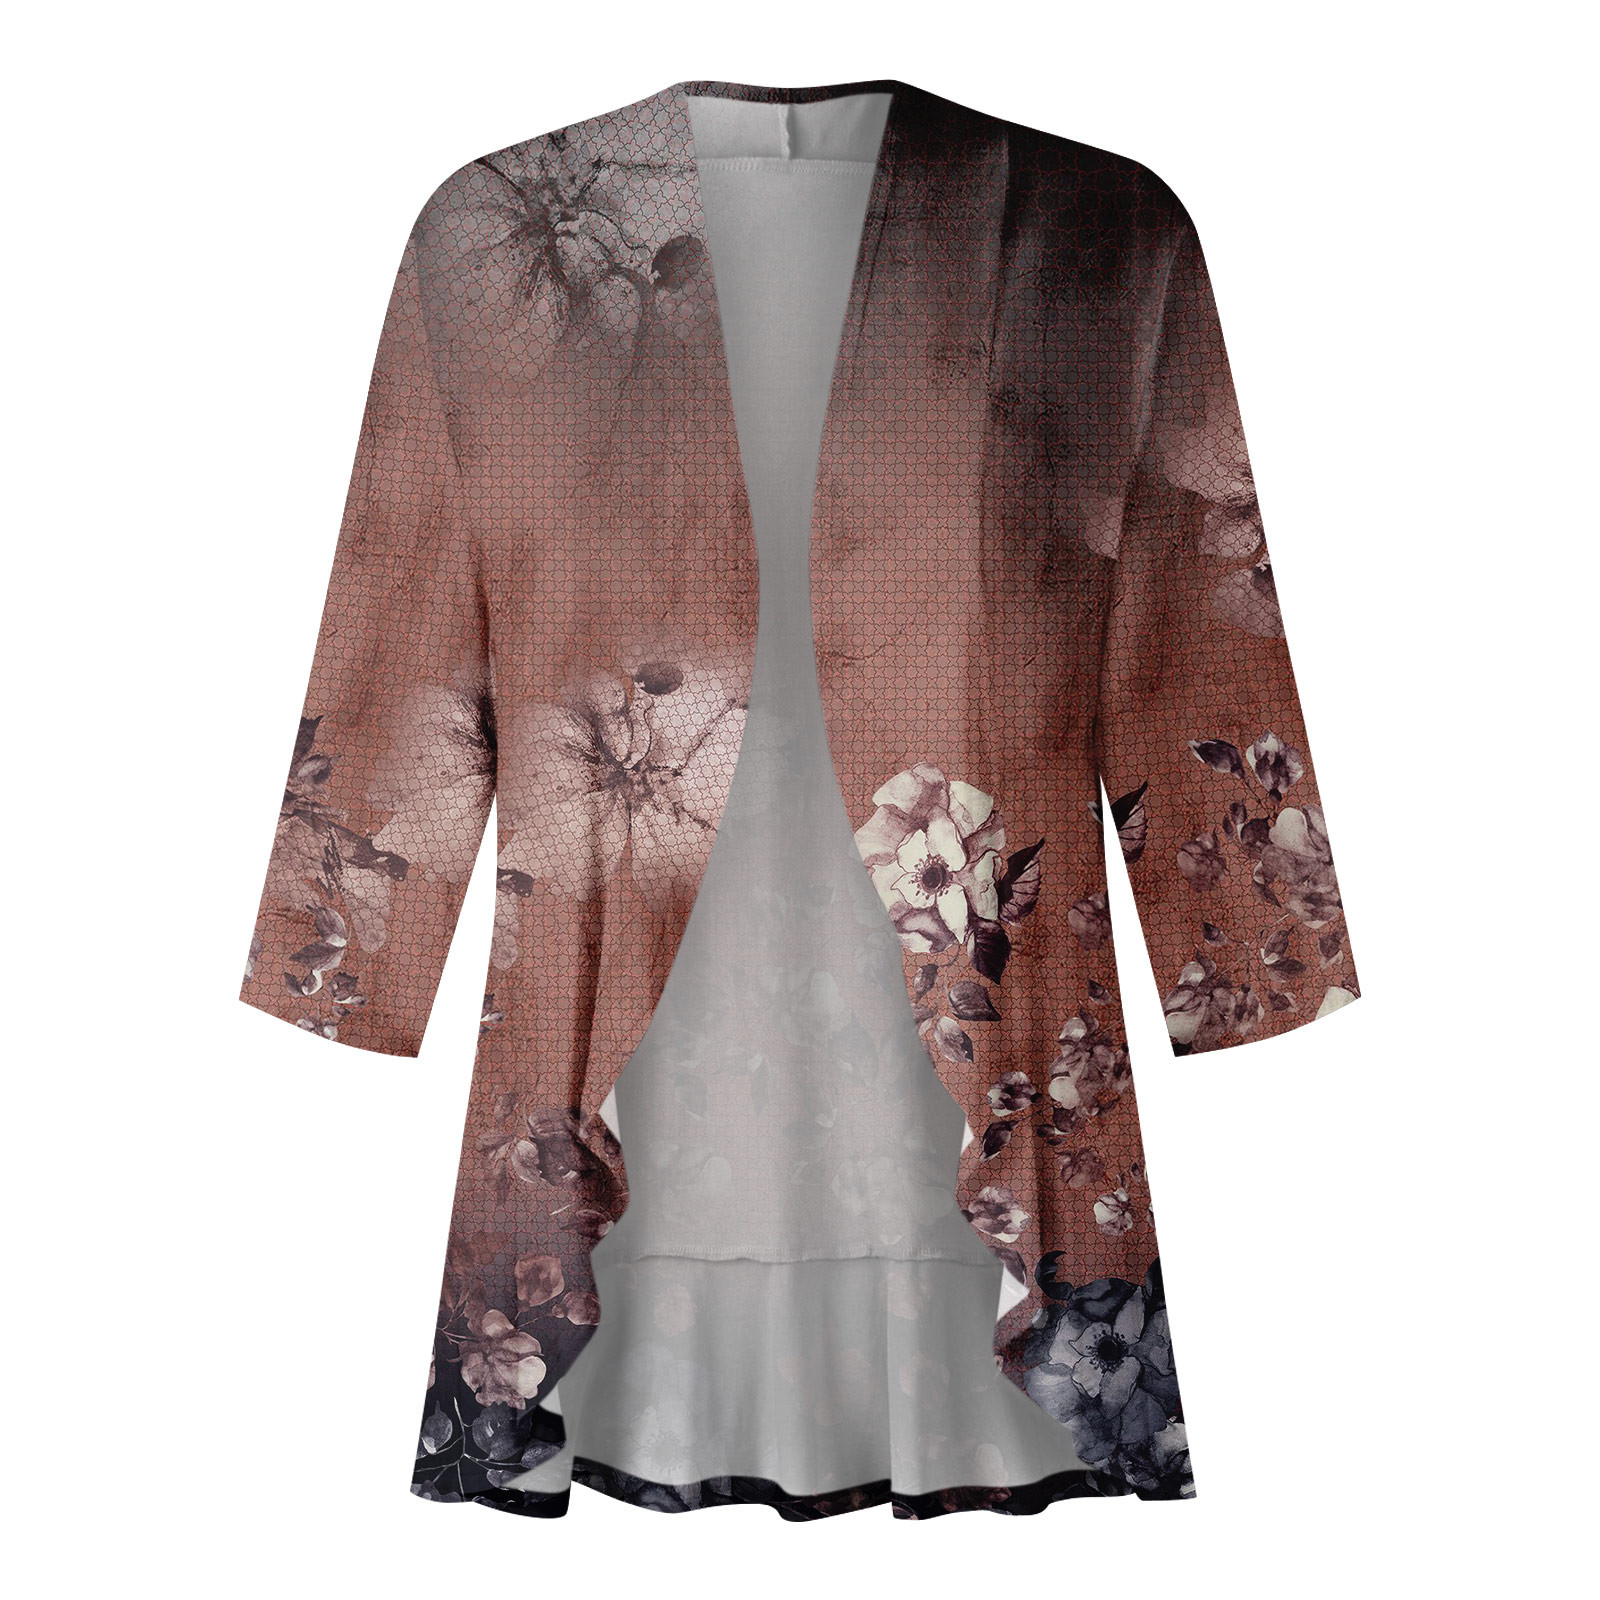 BOMYJESK Kimono Cardigans for Women 3/4 Sleeve Shrugs for Women Plus ...